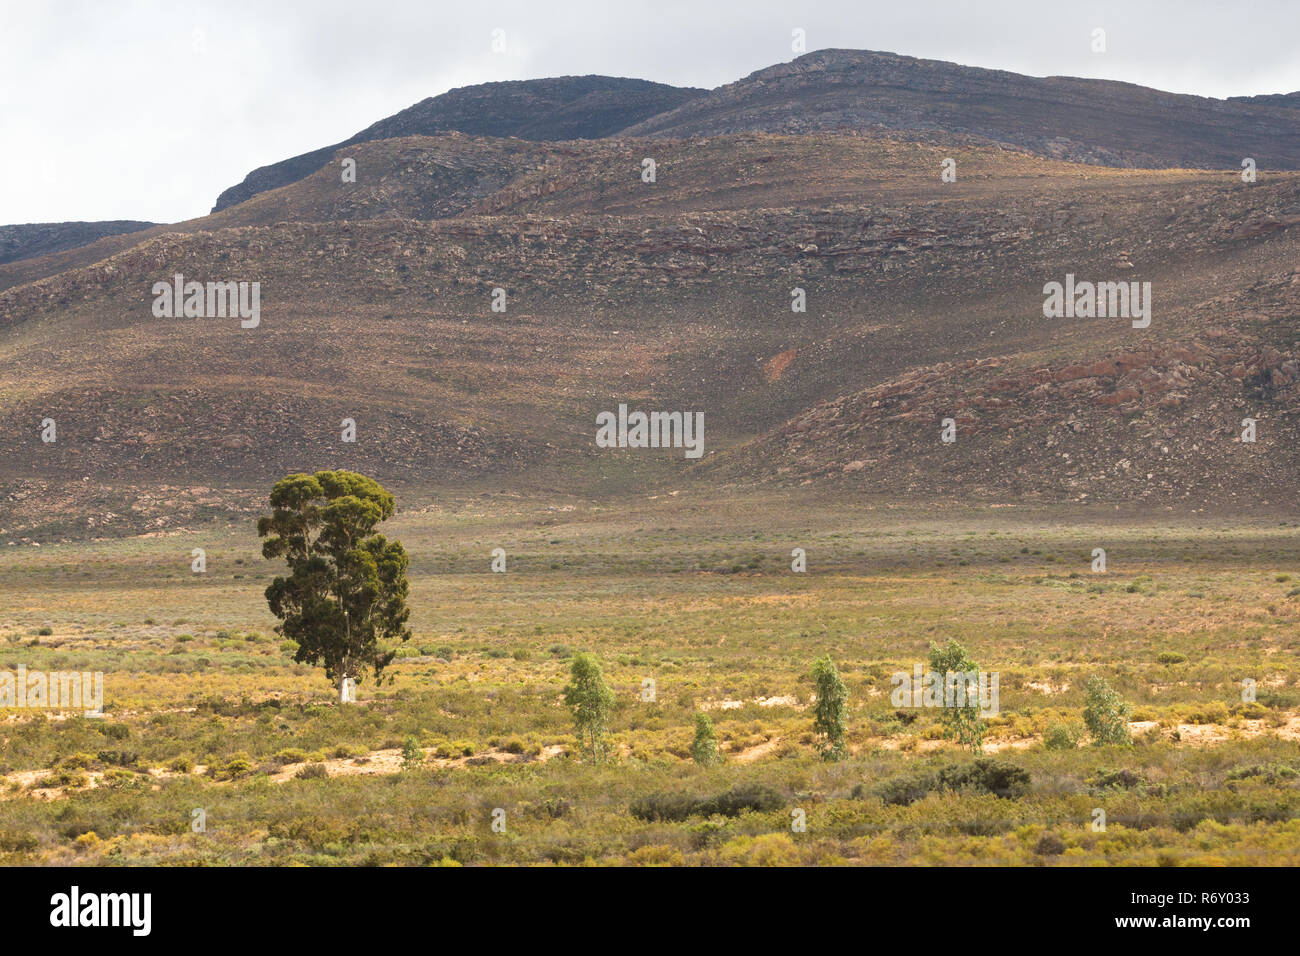 Karoo semi desierto paisaje con montañas de fondo y un solitario árbol en primer plano Foto de stock